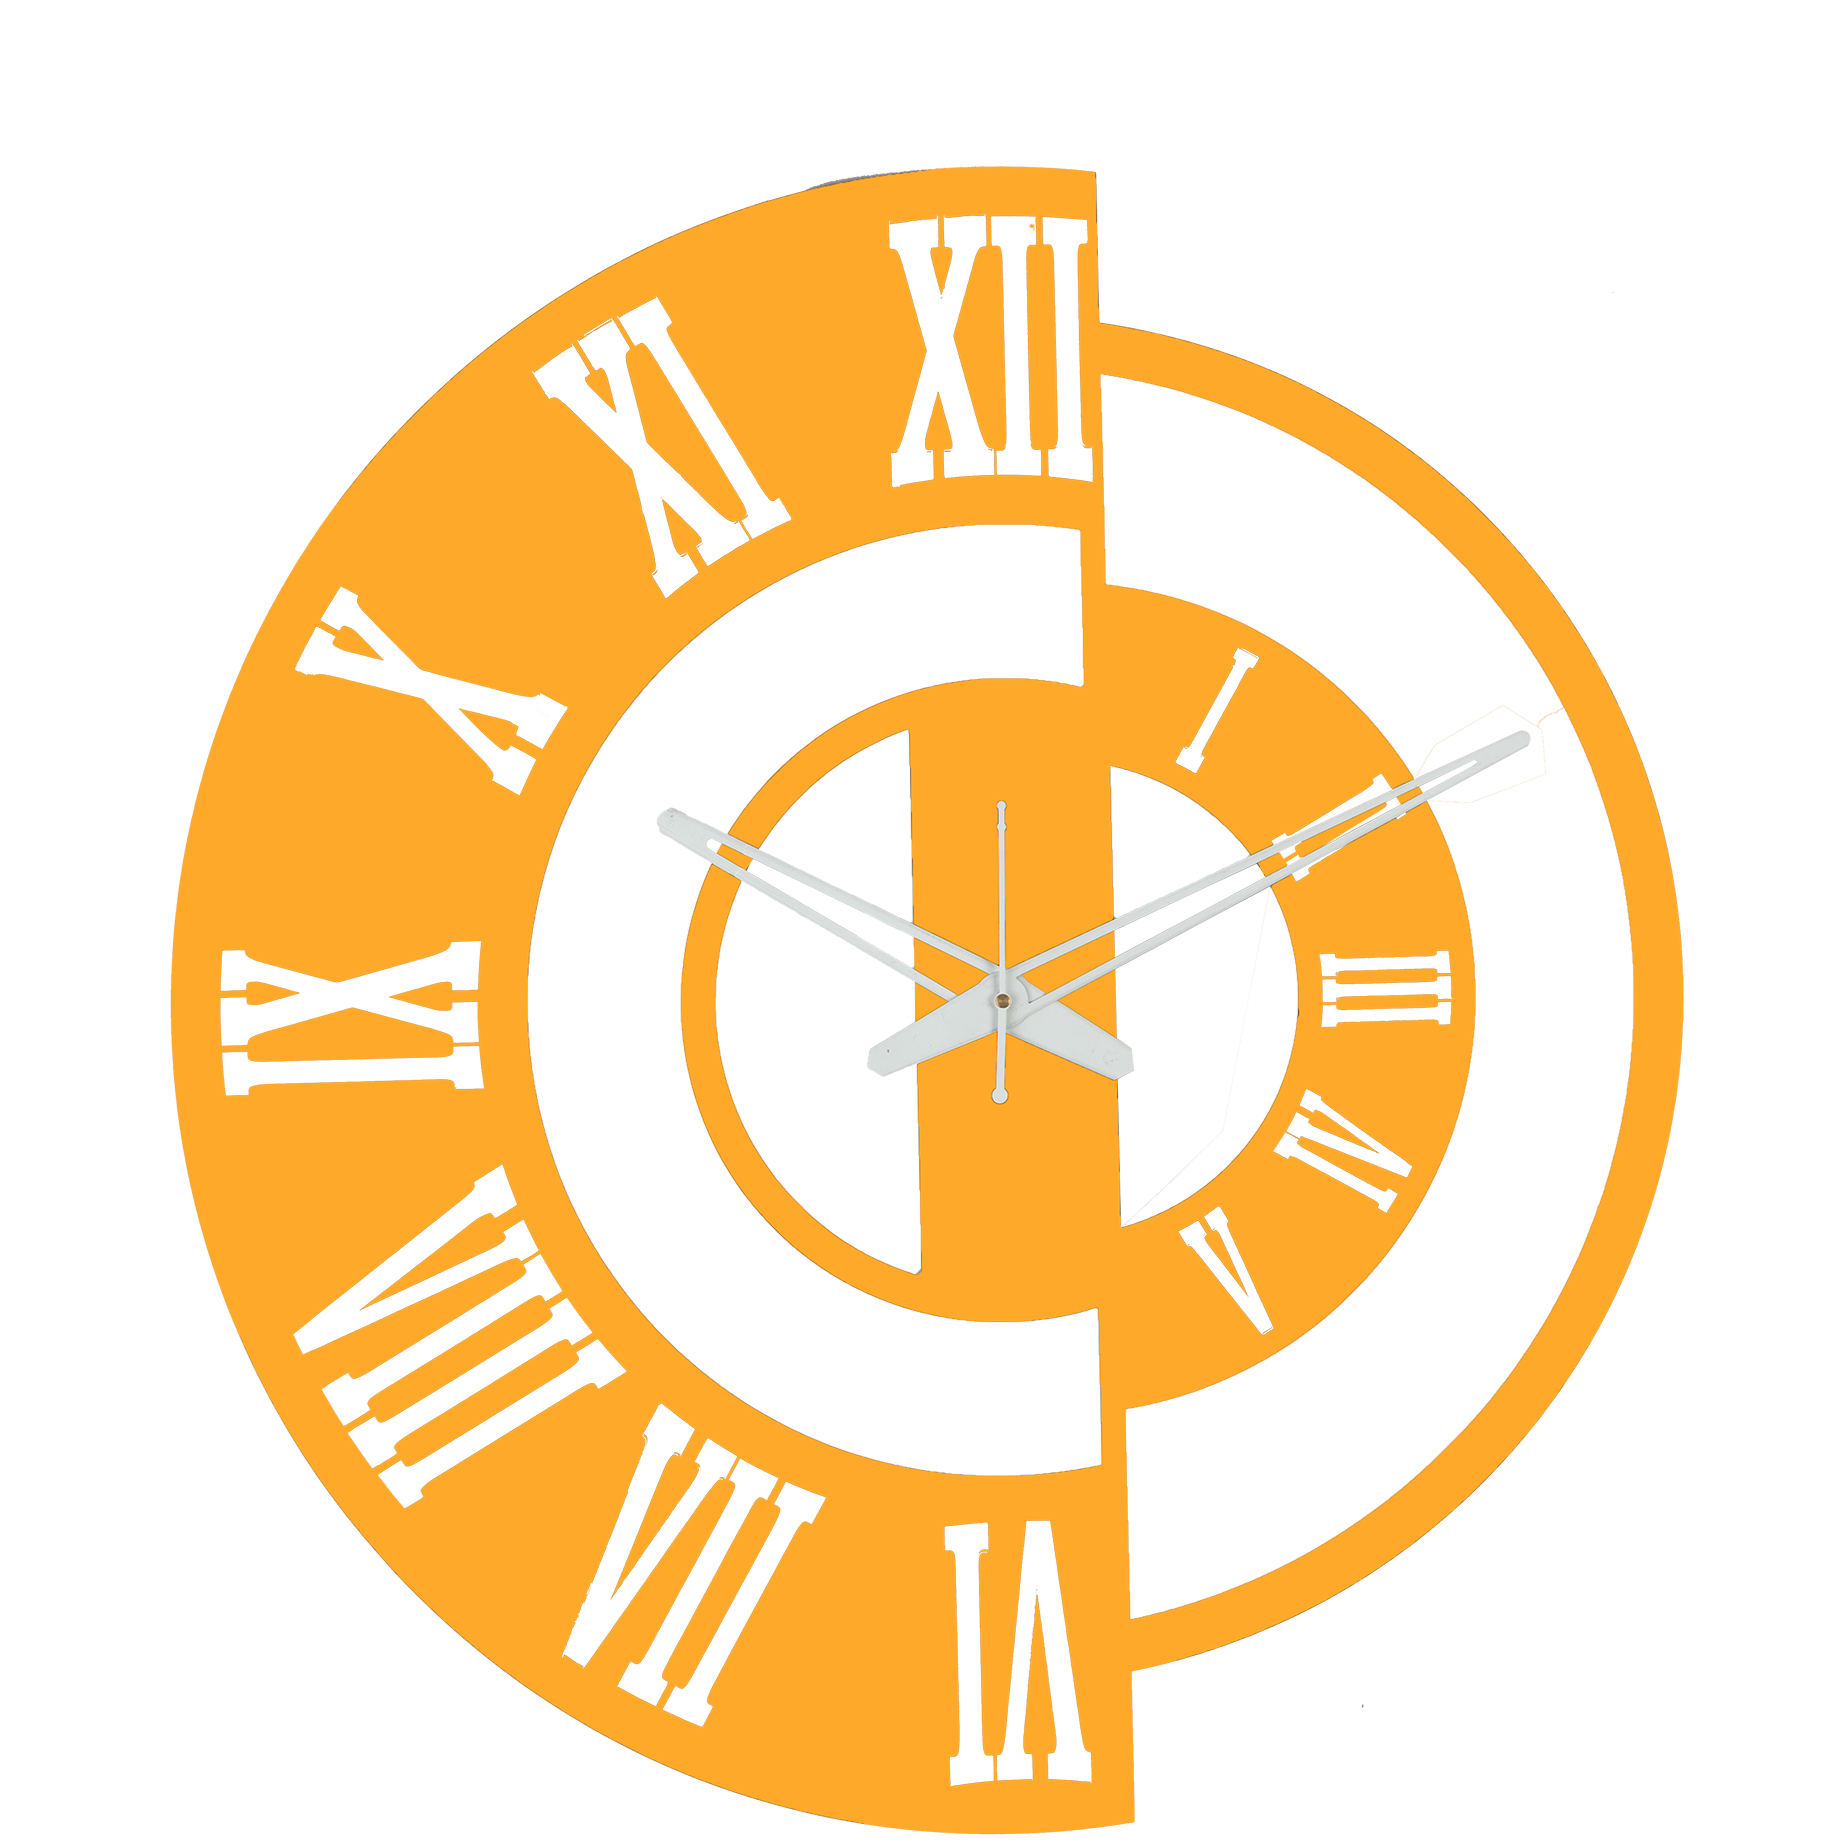 Trinity - Wall Clock